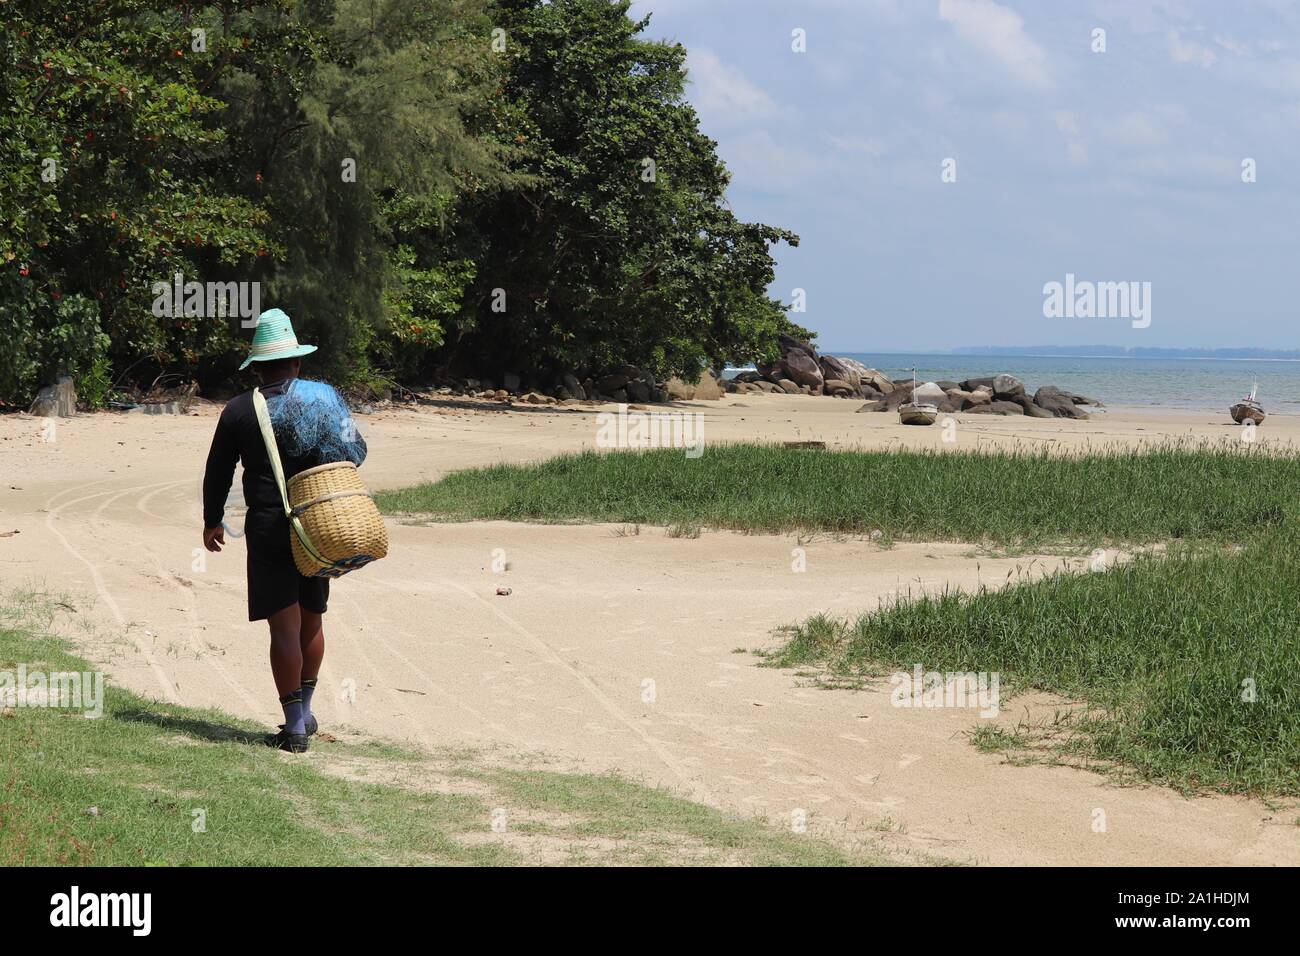 Pescador con una cesta de mimbre y red de pesca va a un mar. El pintoresco paisaje de la costa de Tailandia Foto de stock